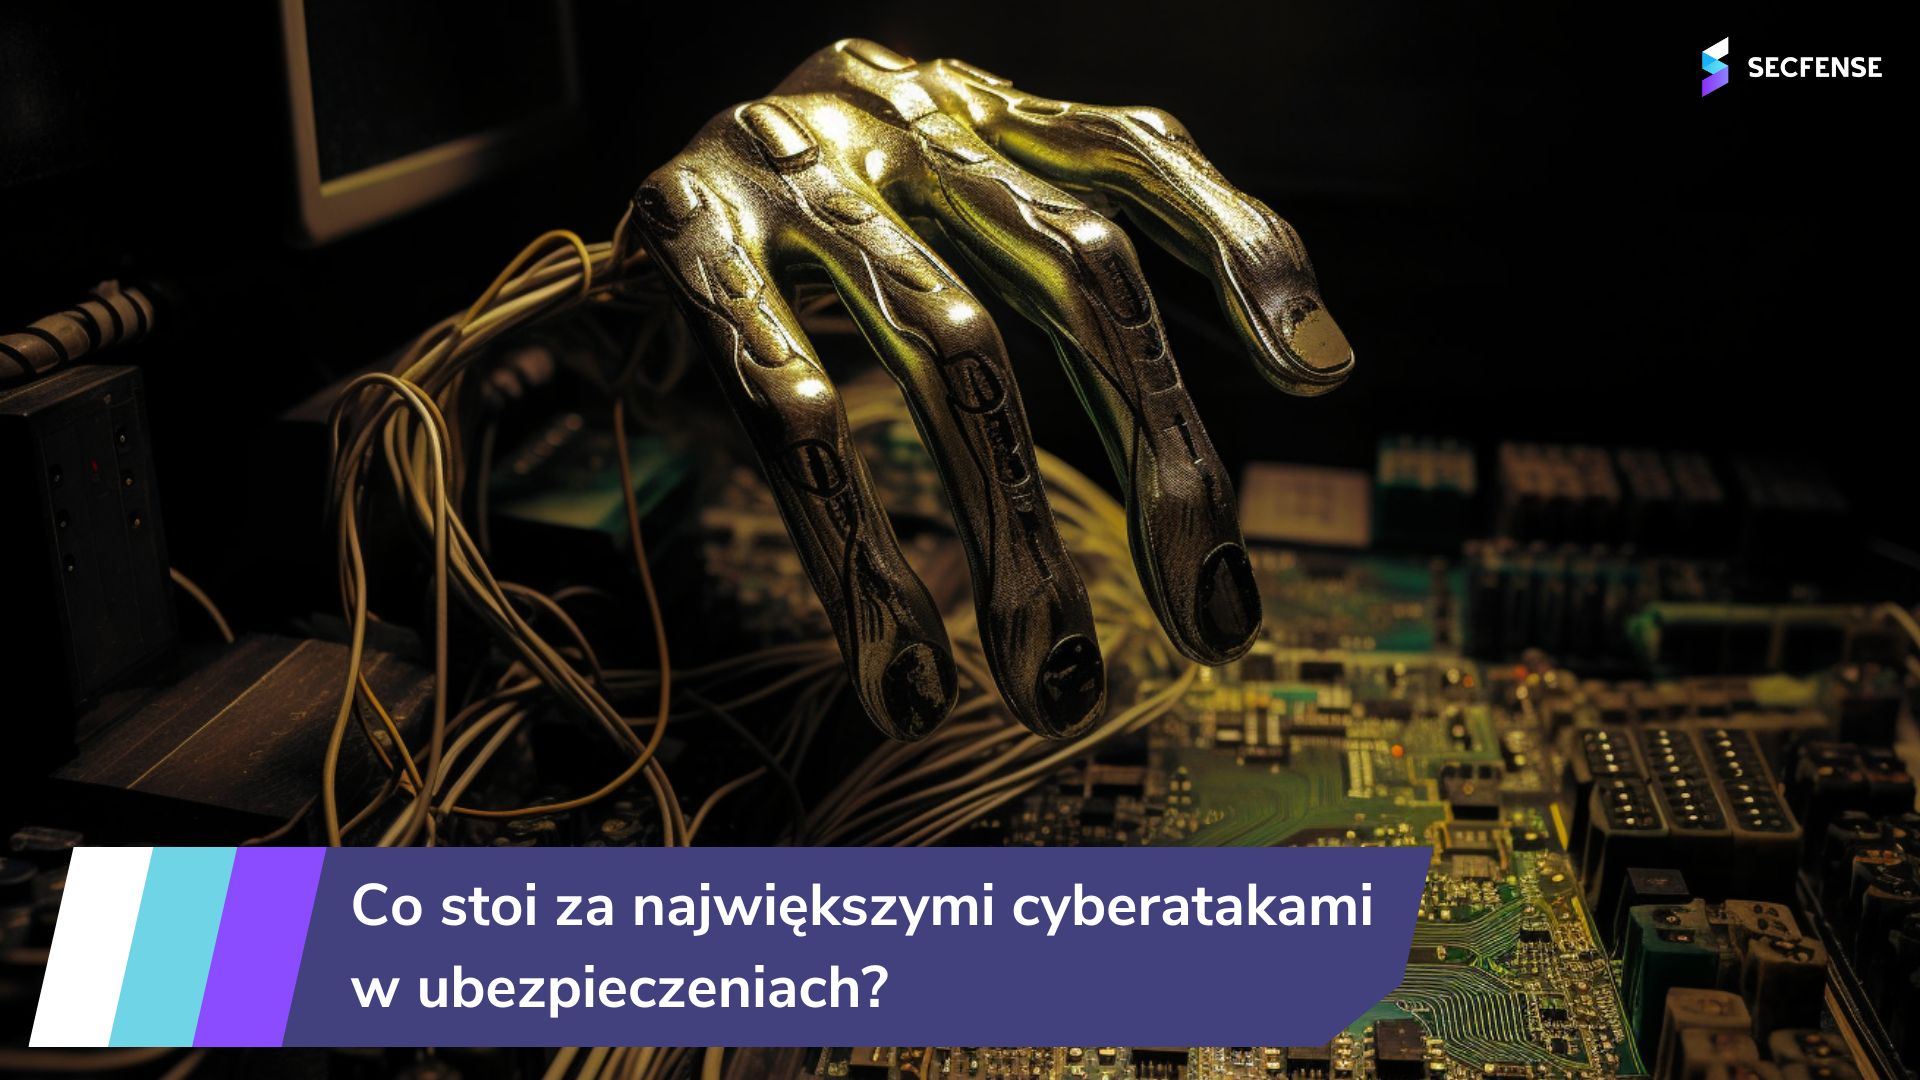 Secfense opisuje co stoi za największymi cyberatakami w ubezpieczeniach